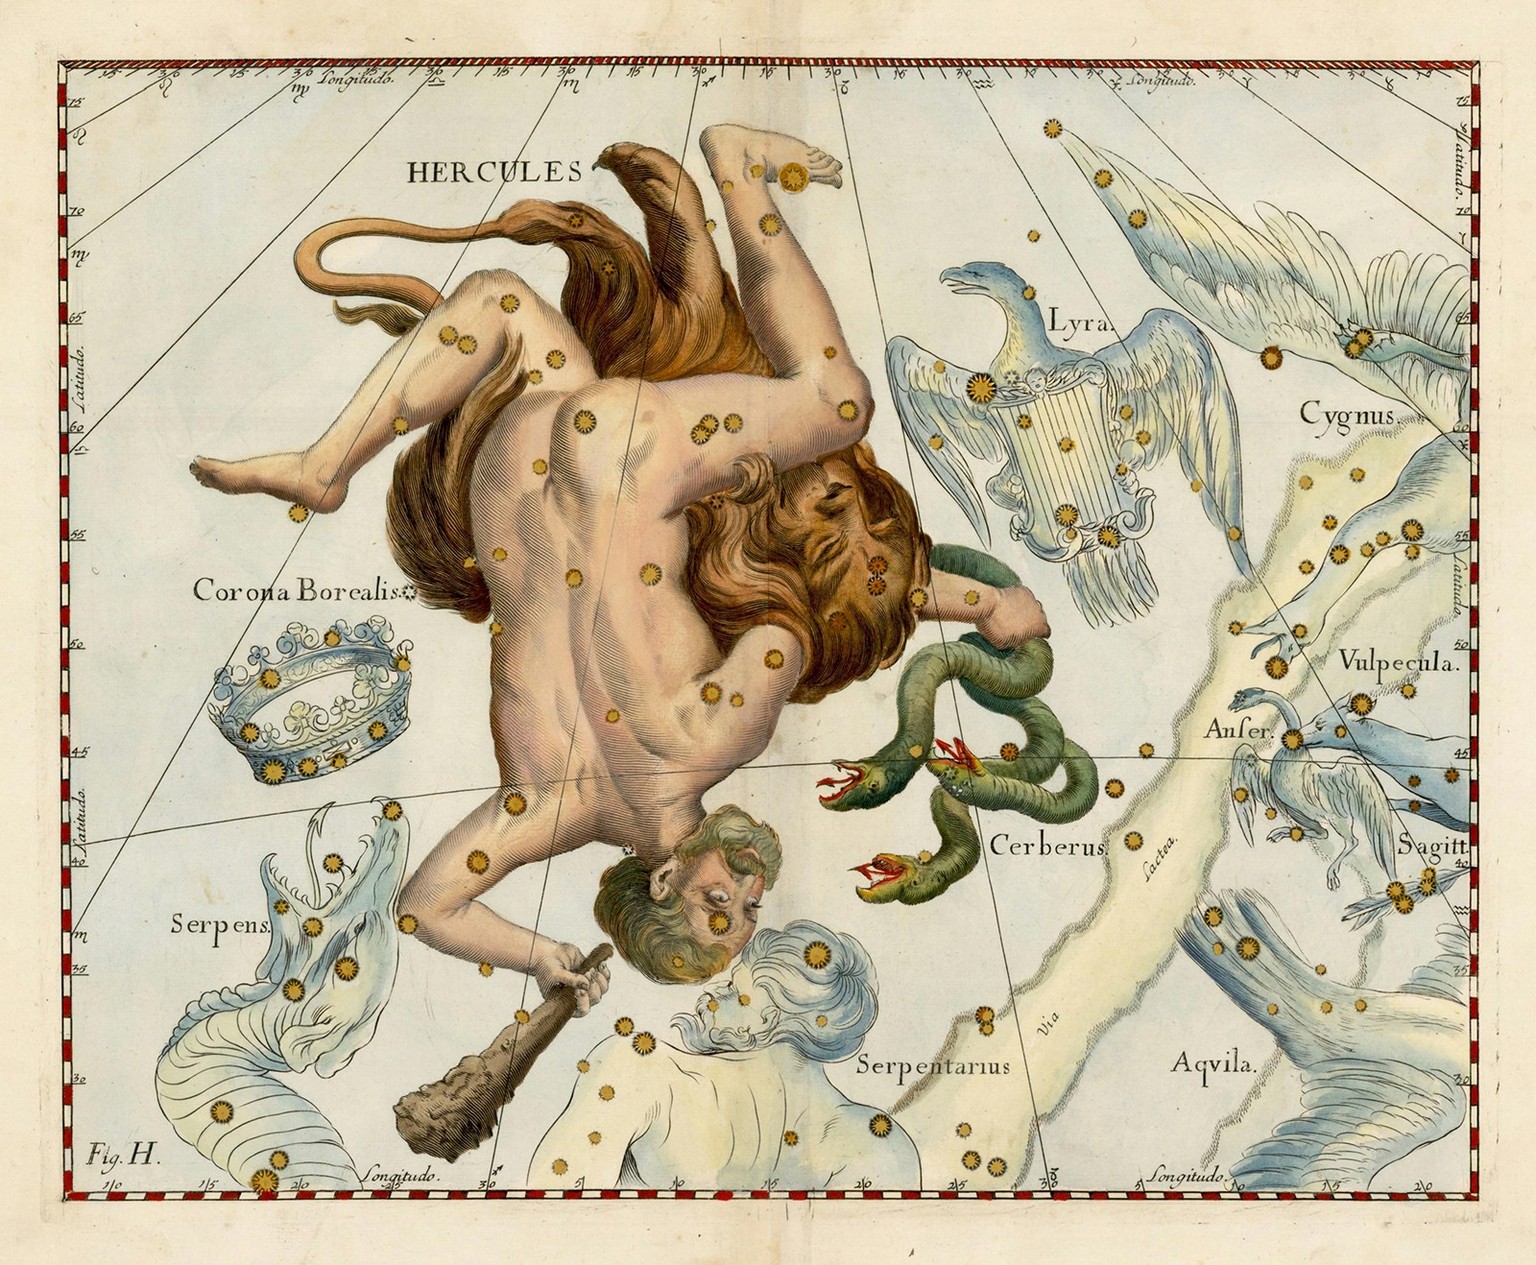 Darstellung aus der «Uranographia» von Johannes Hevelius (1611–1687) mit dem Sternbild HERCULES (HERAKLES), Danzig, 1687. Der Pole Jan Heweliusz gehört zu den bedeutendsten Astronomen seiner Zeit.
htt ...